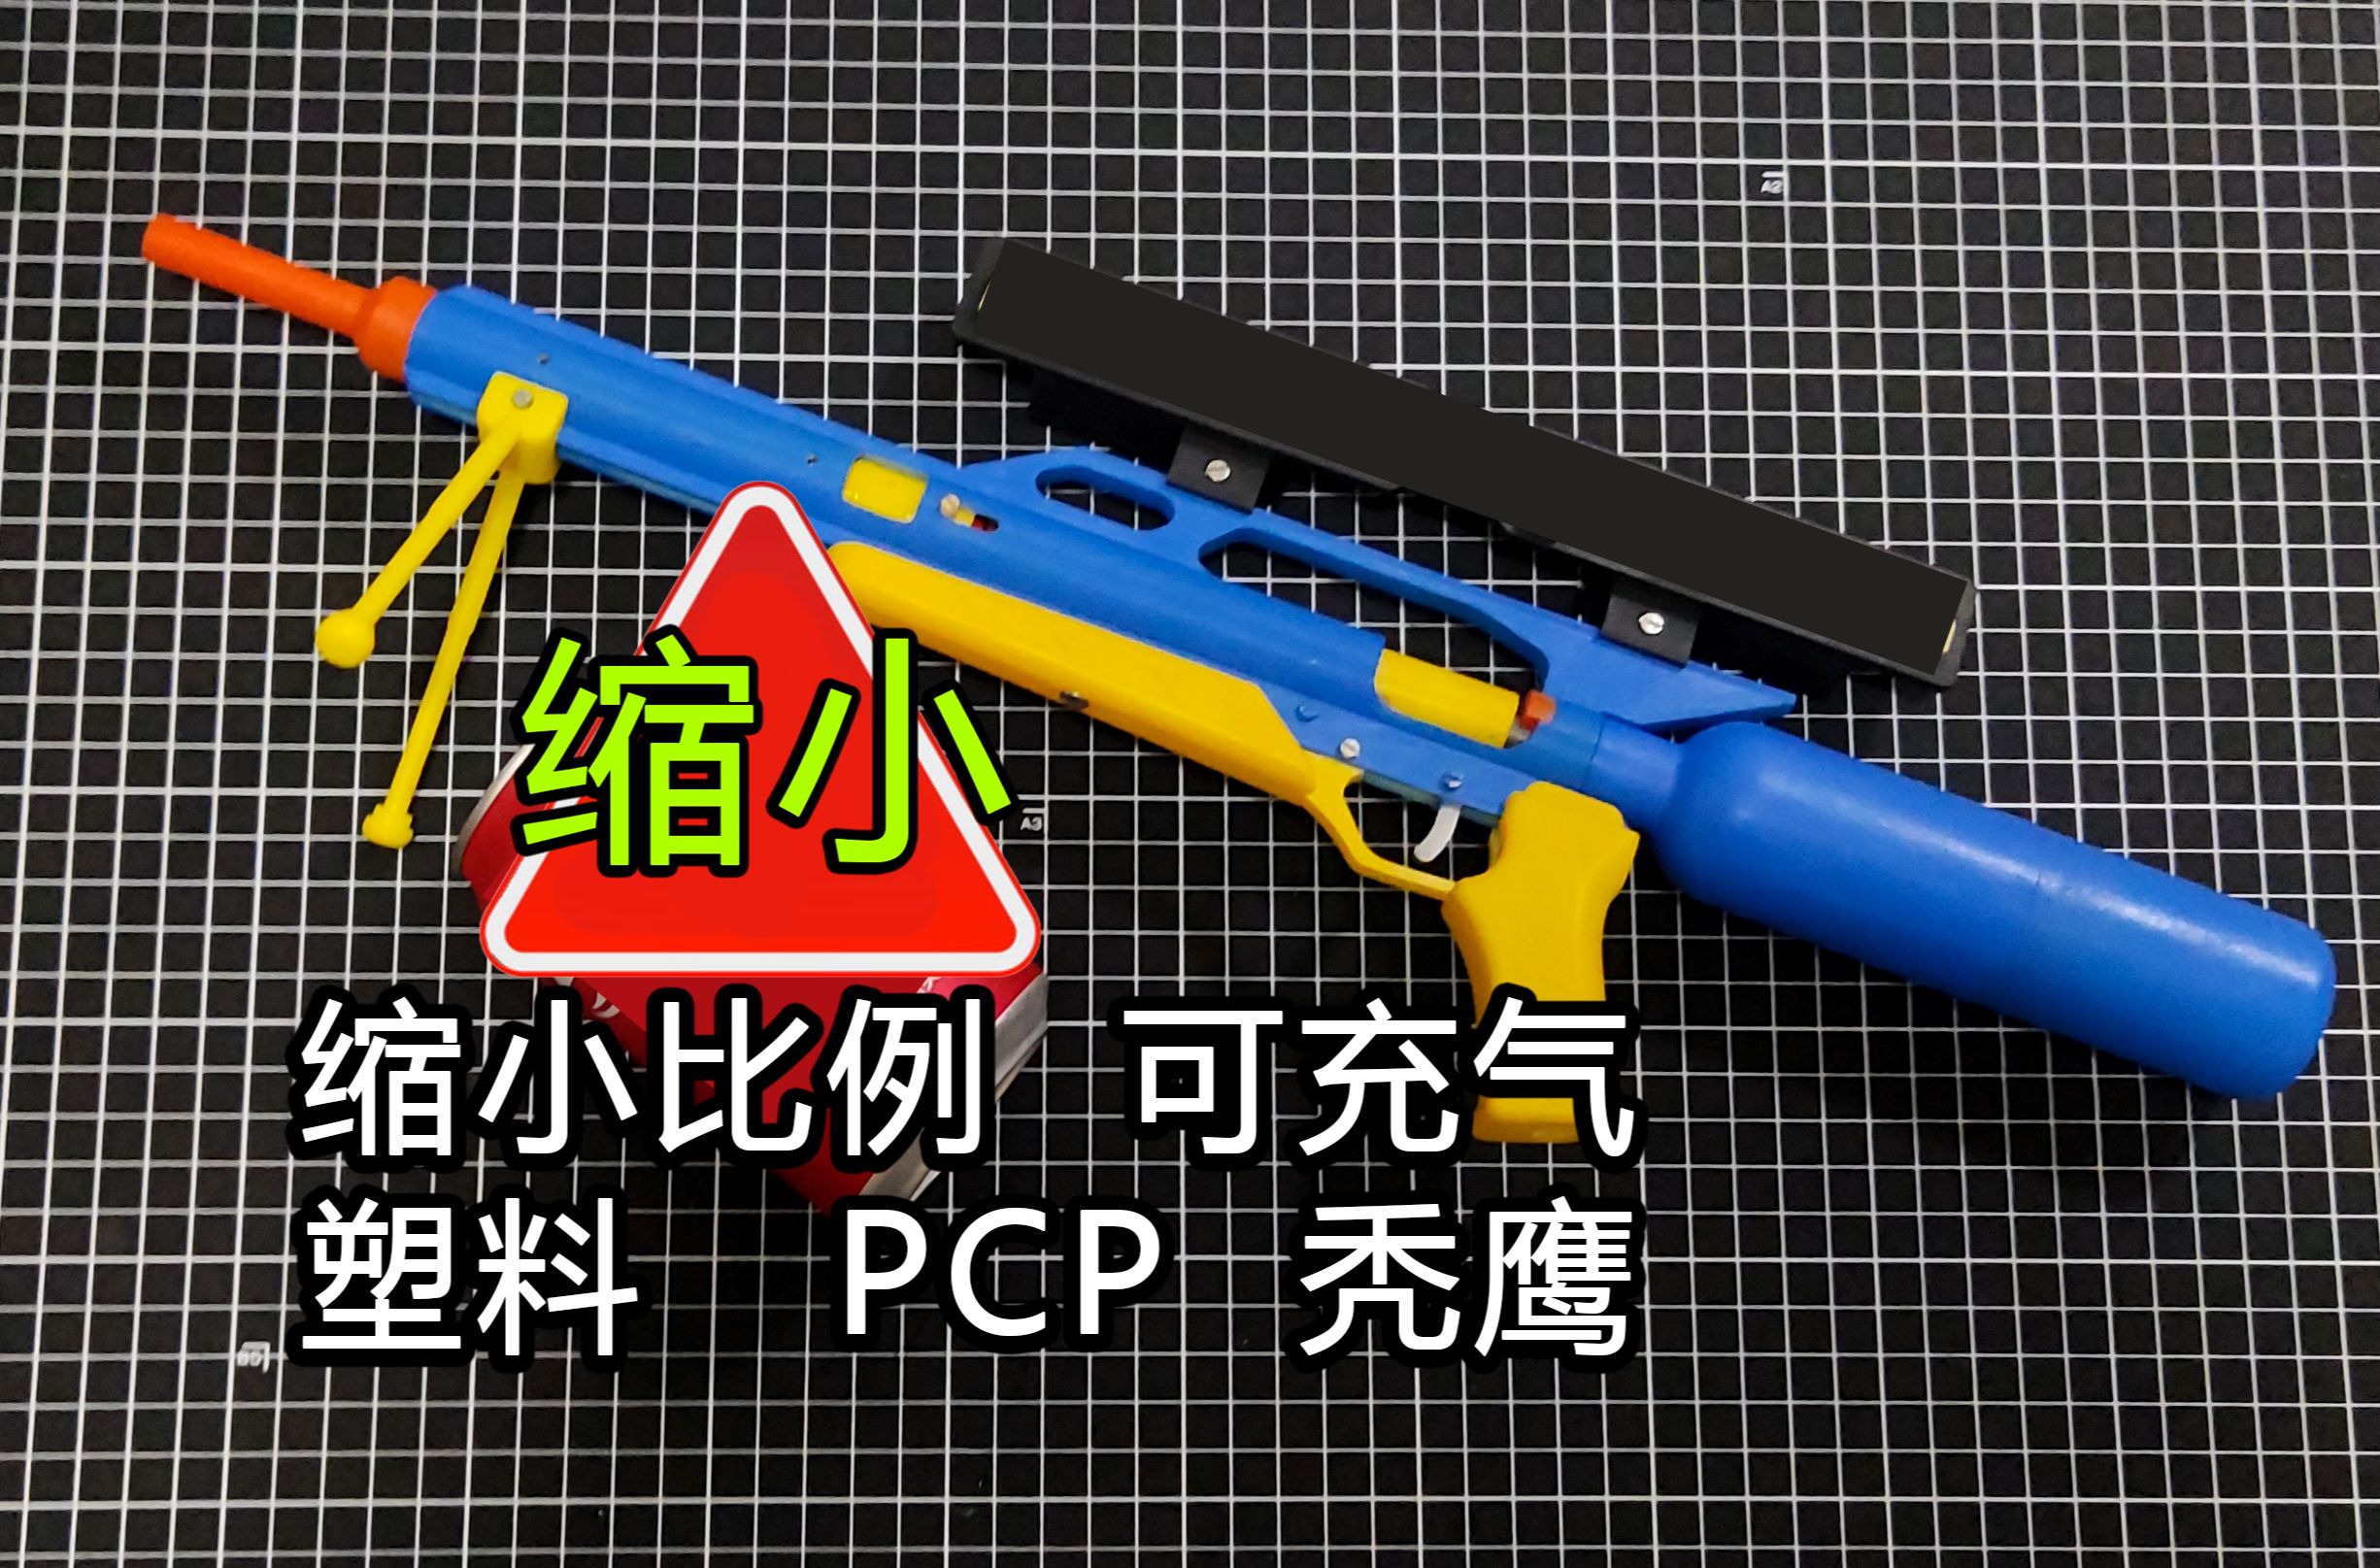 3D打印软弹发射器-缩小比例塑料PCP秃鹰，冷媒充气枪形模型，无威力pcp秃鹰缩小比例玩具预充气枪形塑料玩具